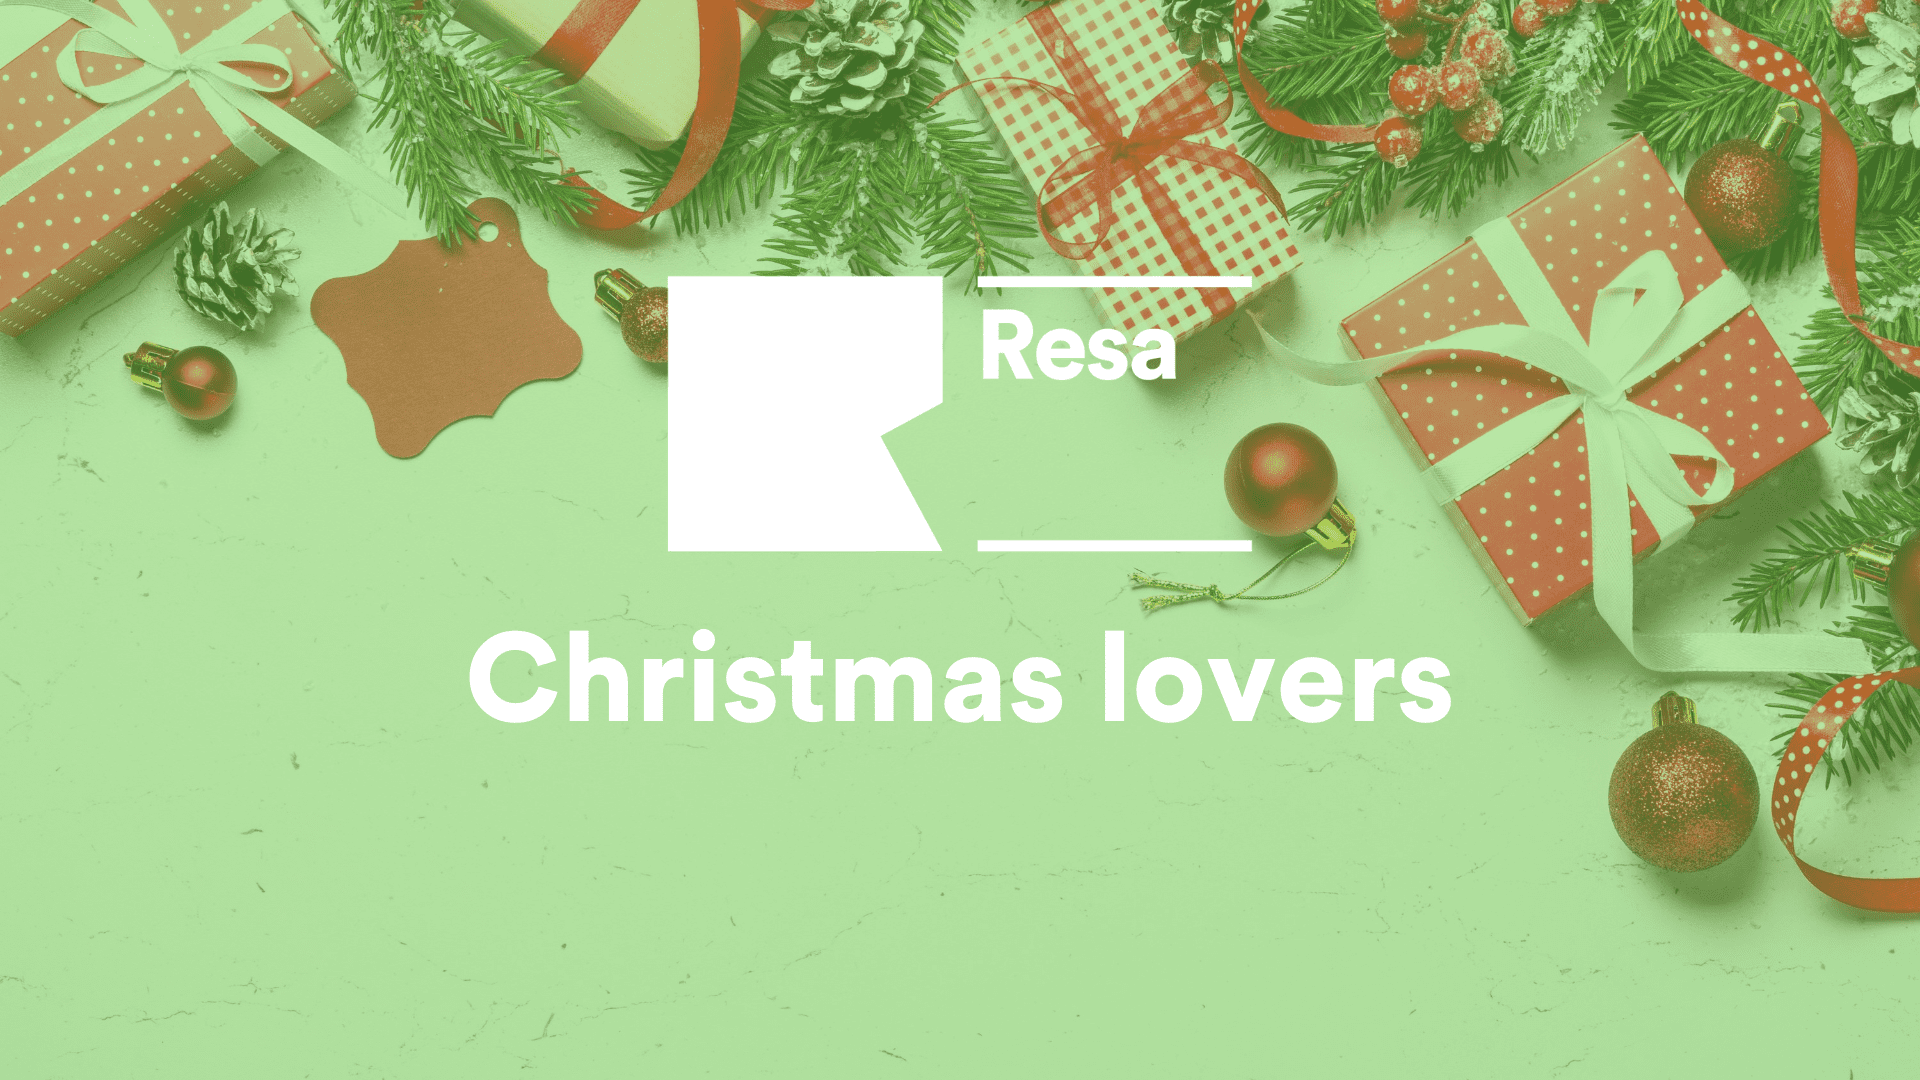 ¡Felices fiestas de parte de todo el equipo Resa! ✨